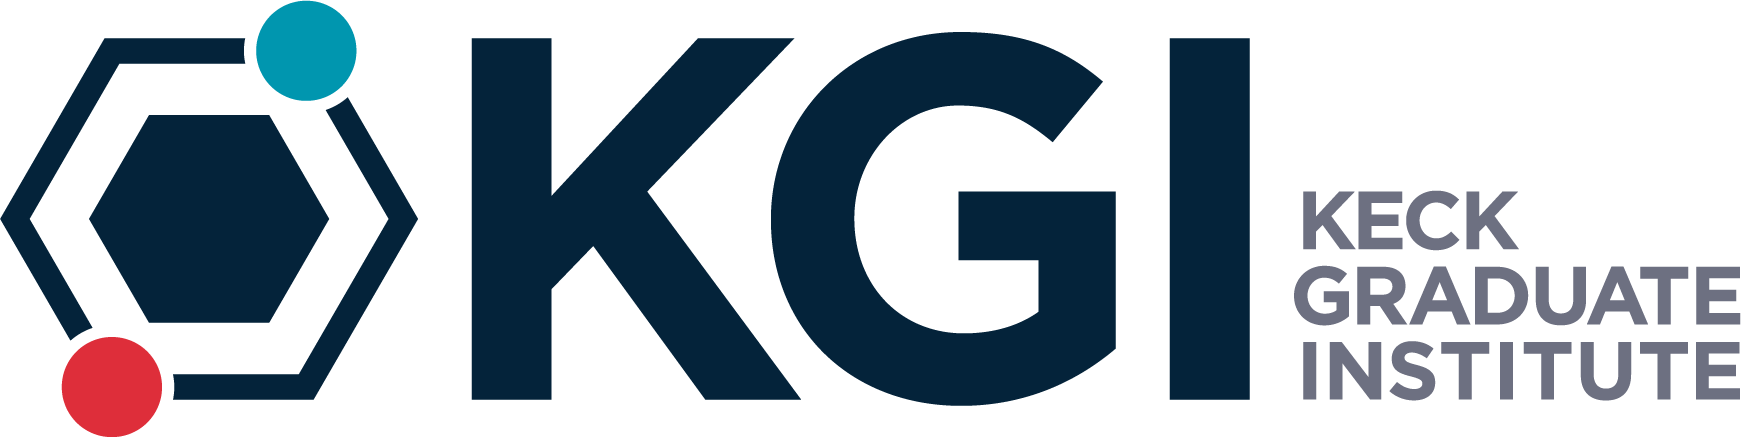 Keck Graduate Institute logo.